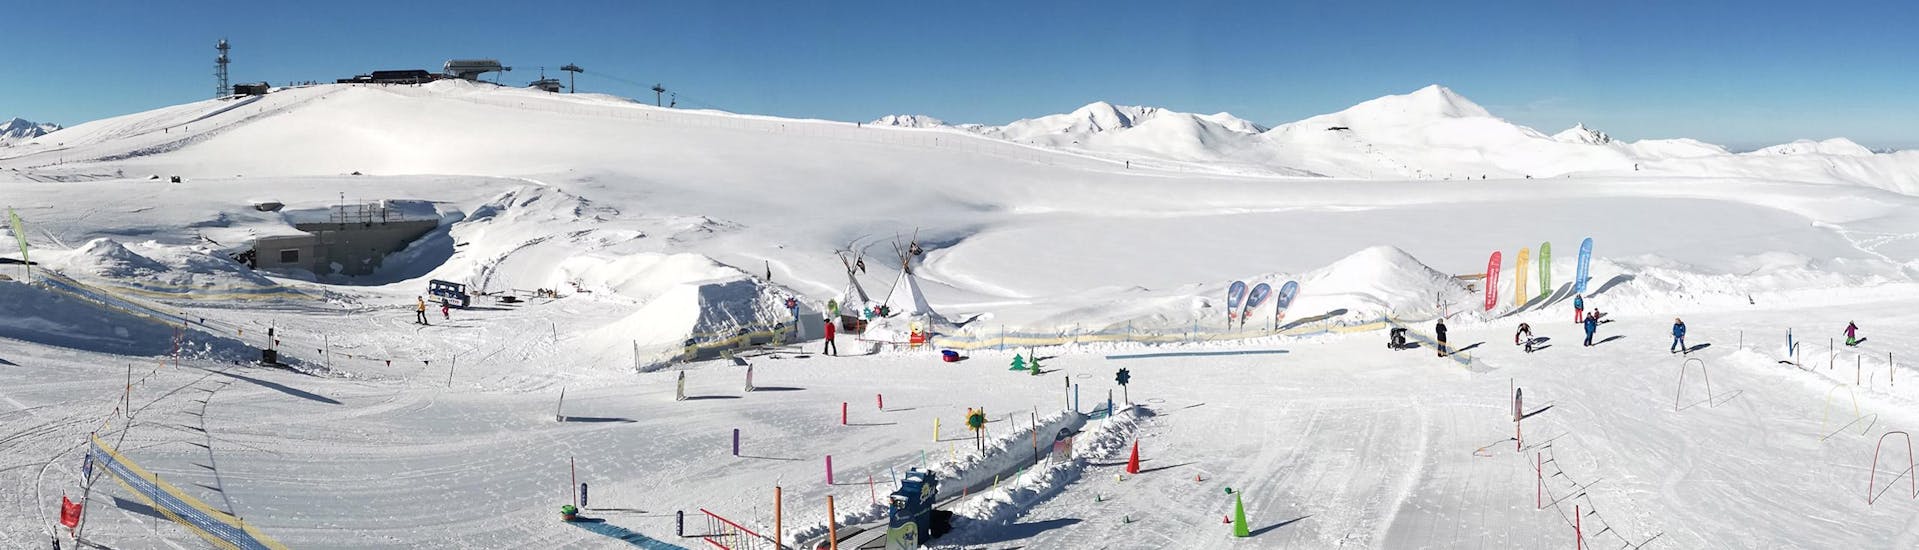 Eine wunderschöne Pistenlandschaft beim halbtägigen Kinder-Skikurs (3-14 J.) für alle Levels mit der Schneesportschule Wildkogel.